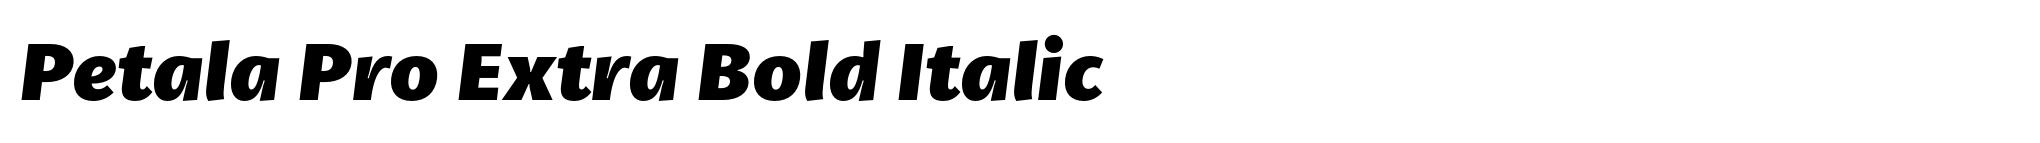 Petala Pro Extra Bold Italic image